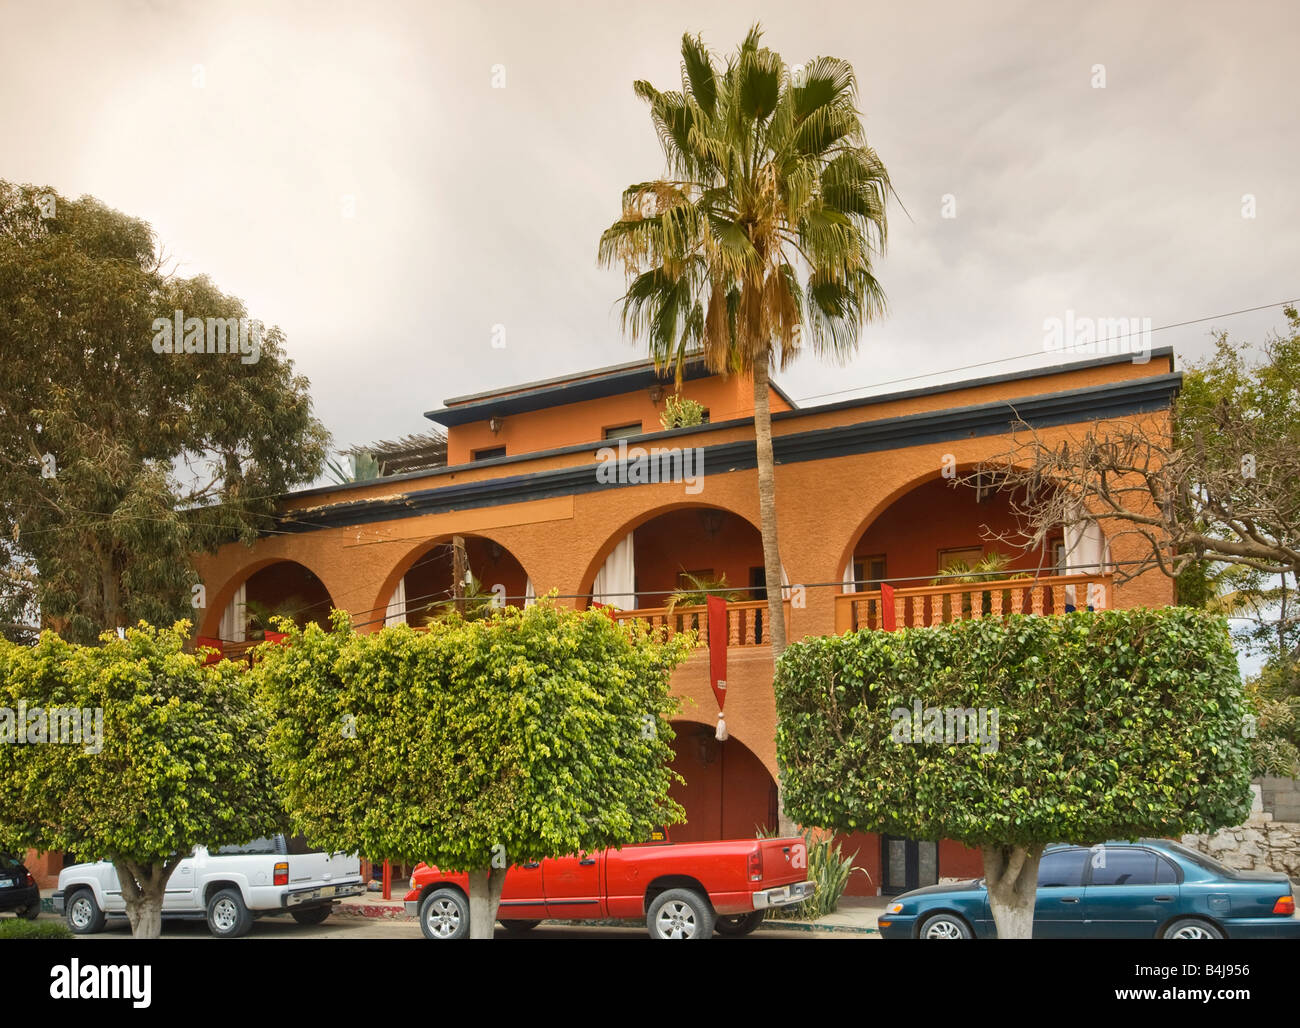 Hotel California in Todos Santos Baja California Sur Mexico Stock Photo